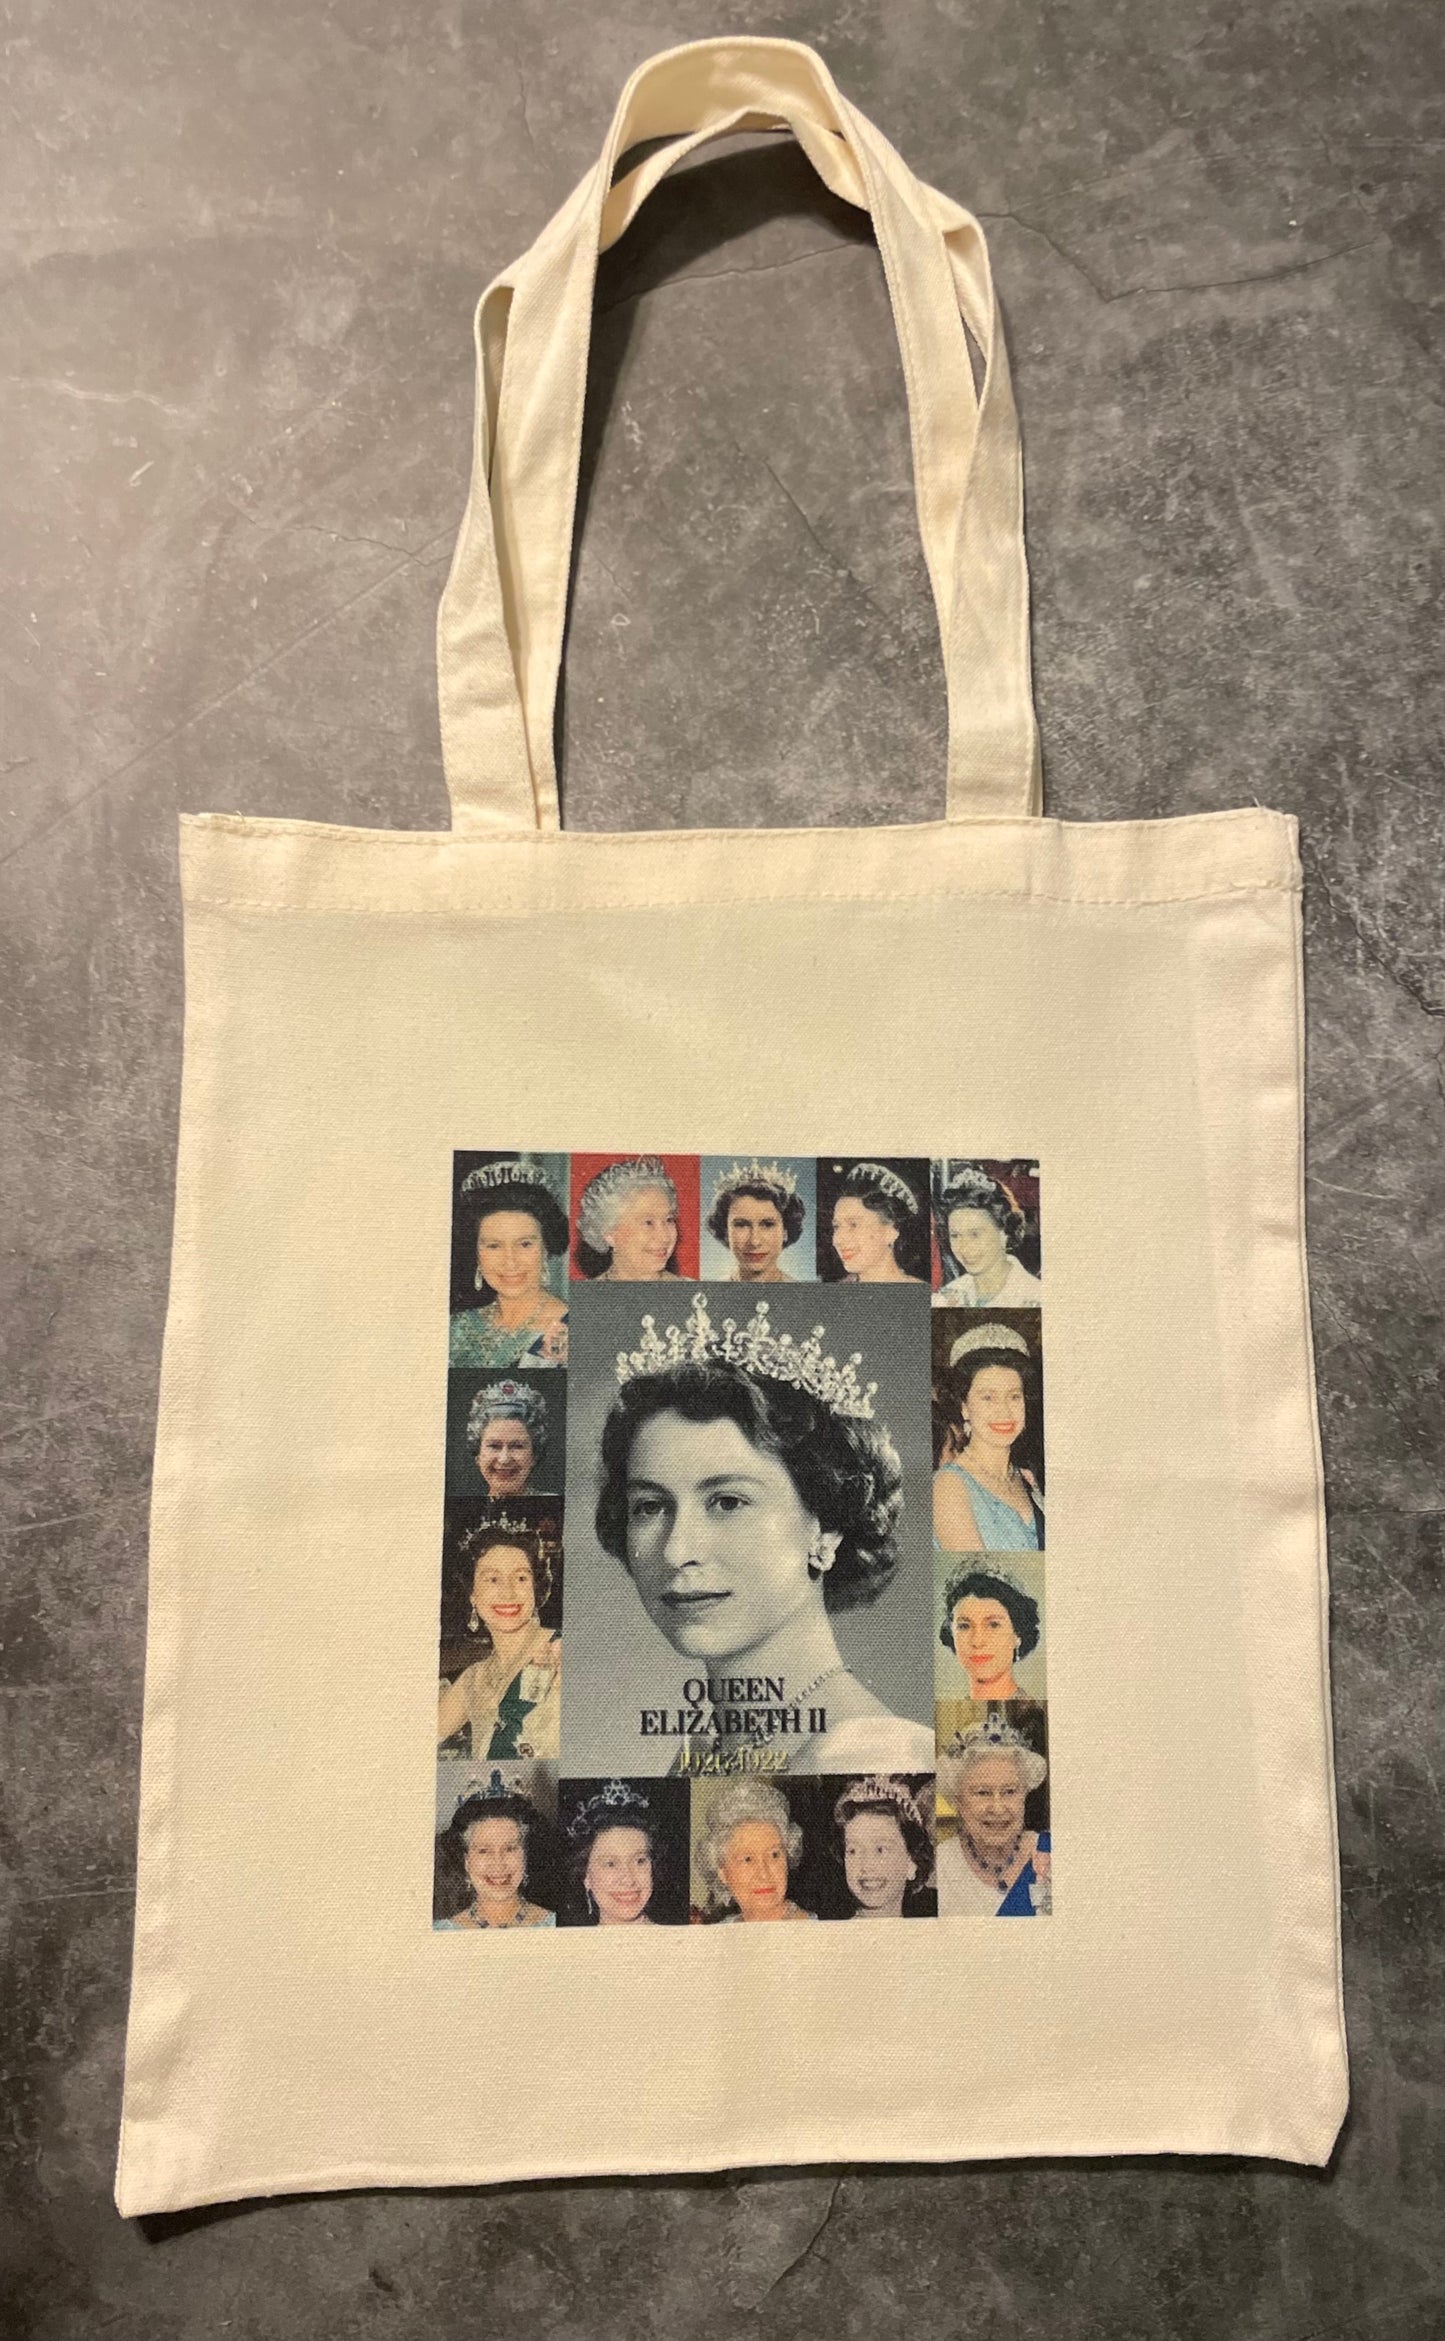 Custom Made Tote, Queen Elizabeth II, Queen Elizabeth II Customized Tote, Personalized Tote, Customized Bags, Personalized Bags